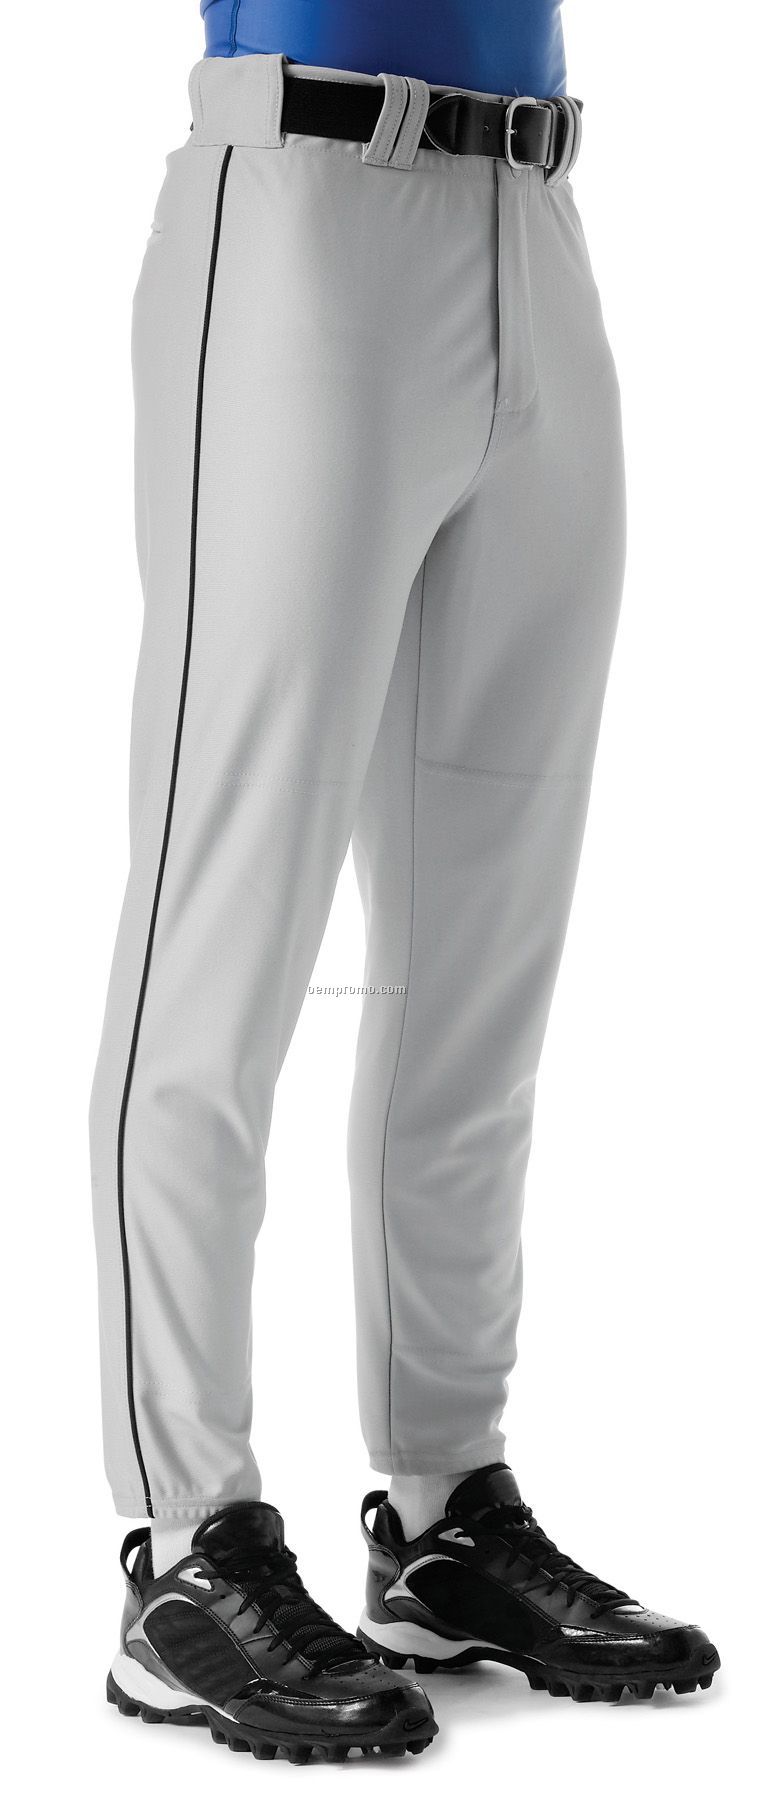 Nb6178 Youth Pro Style Elastic Bottom Baseball Pant